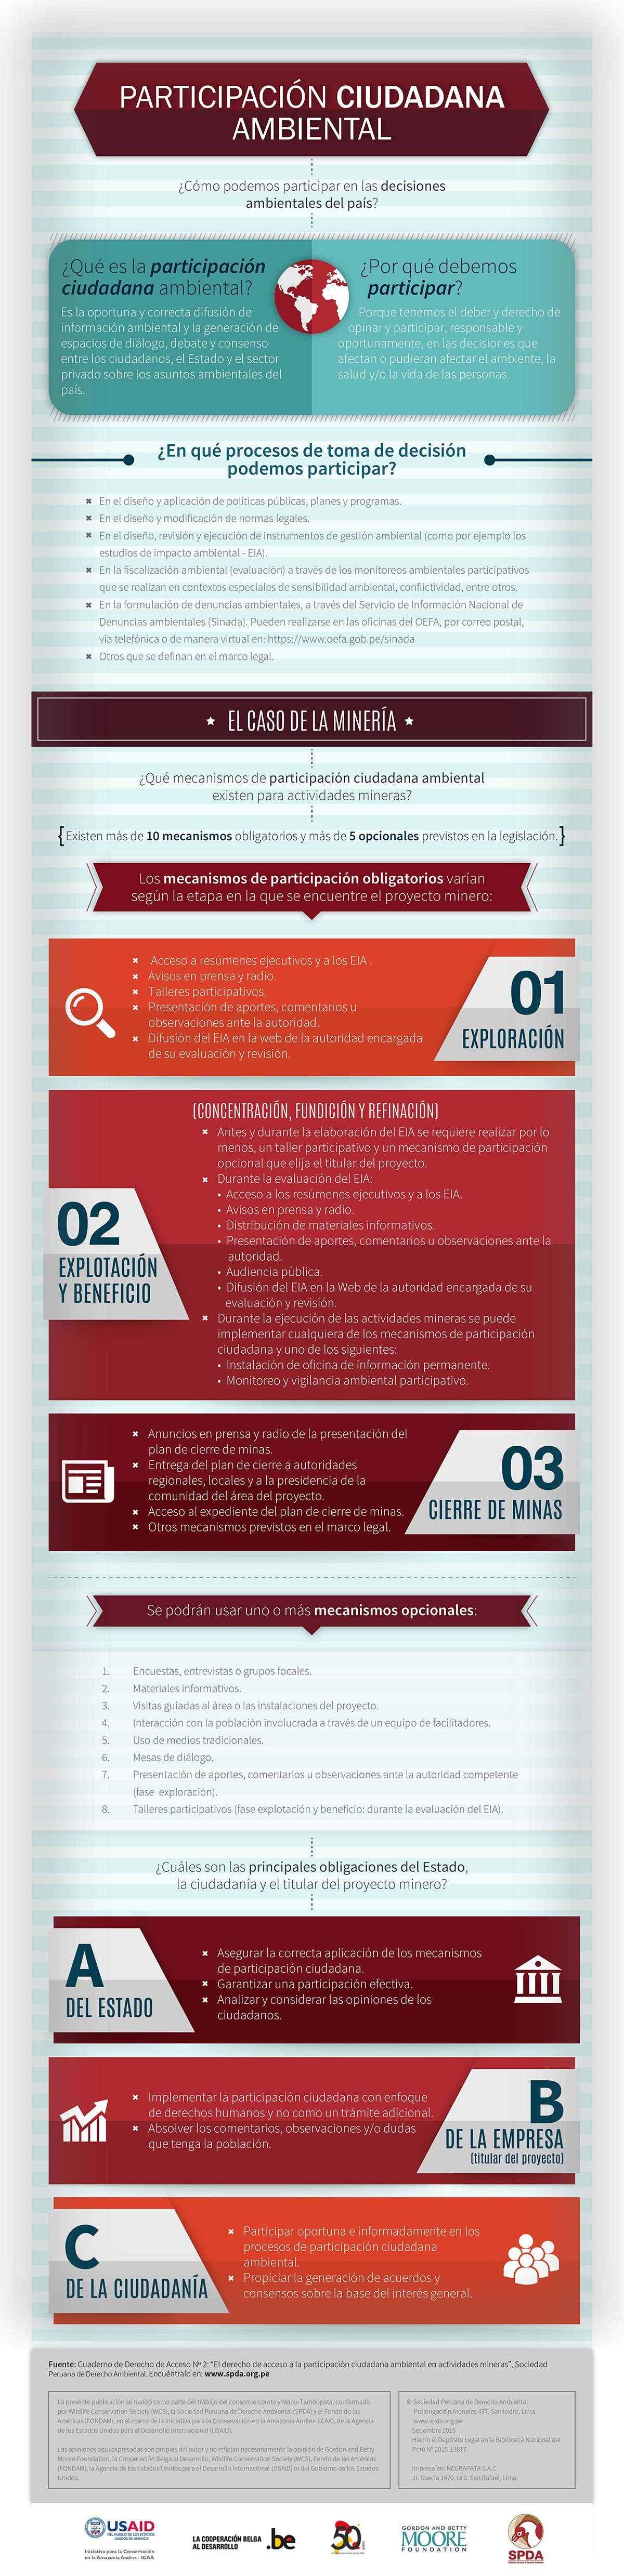 infografia-participacionciudadana-02